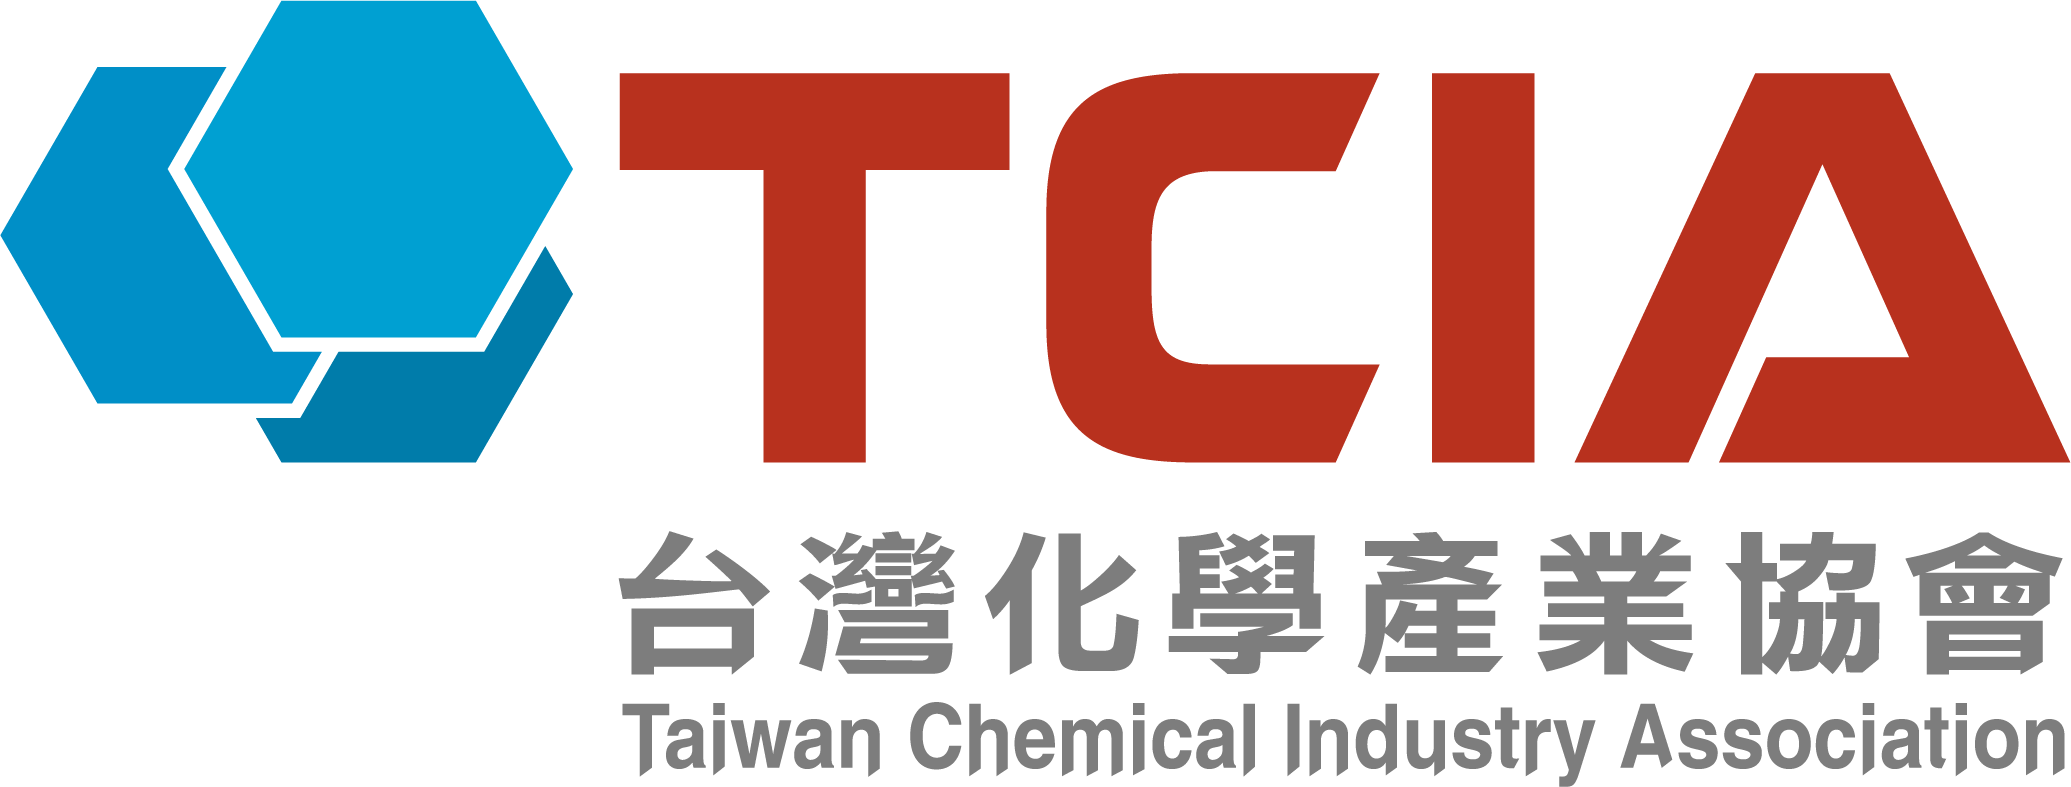 台灣化學產業協會